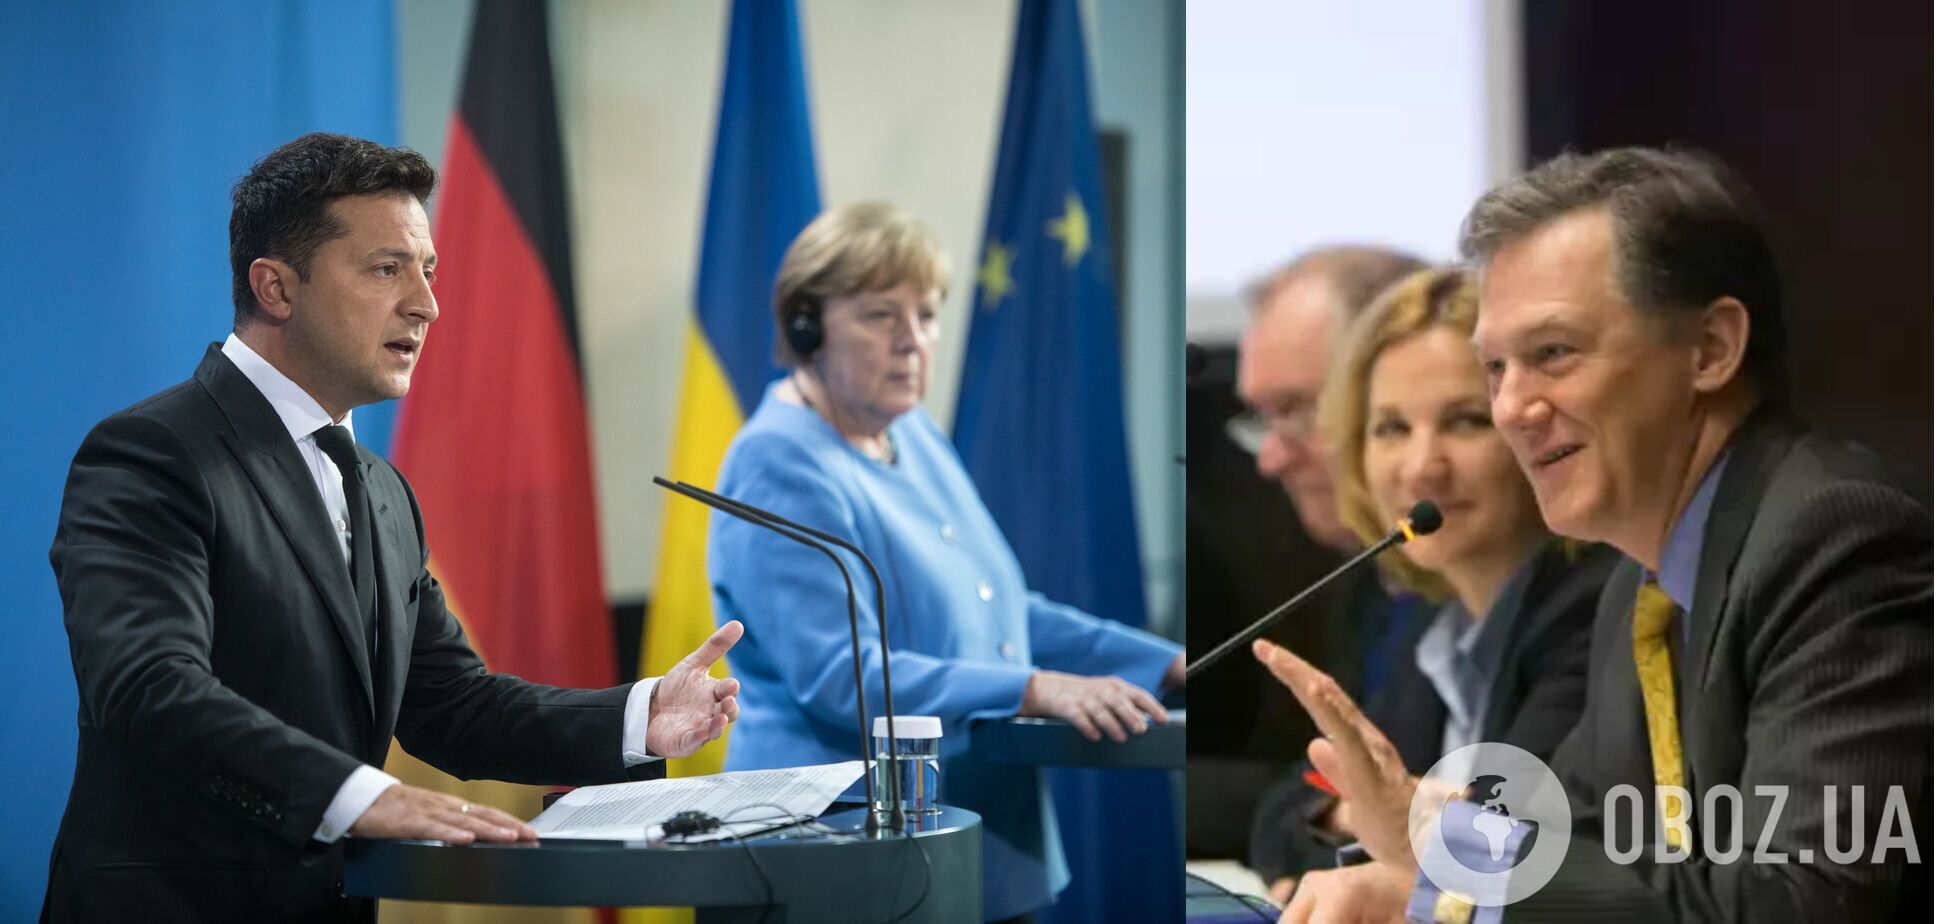 Вашингтон внимательно наблюдал за встречей Зеленского и Меркель, – Джордж Кент